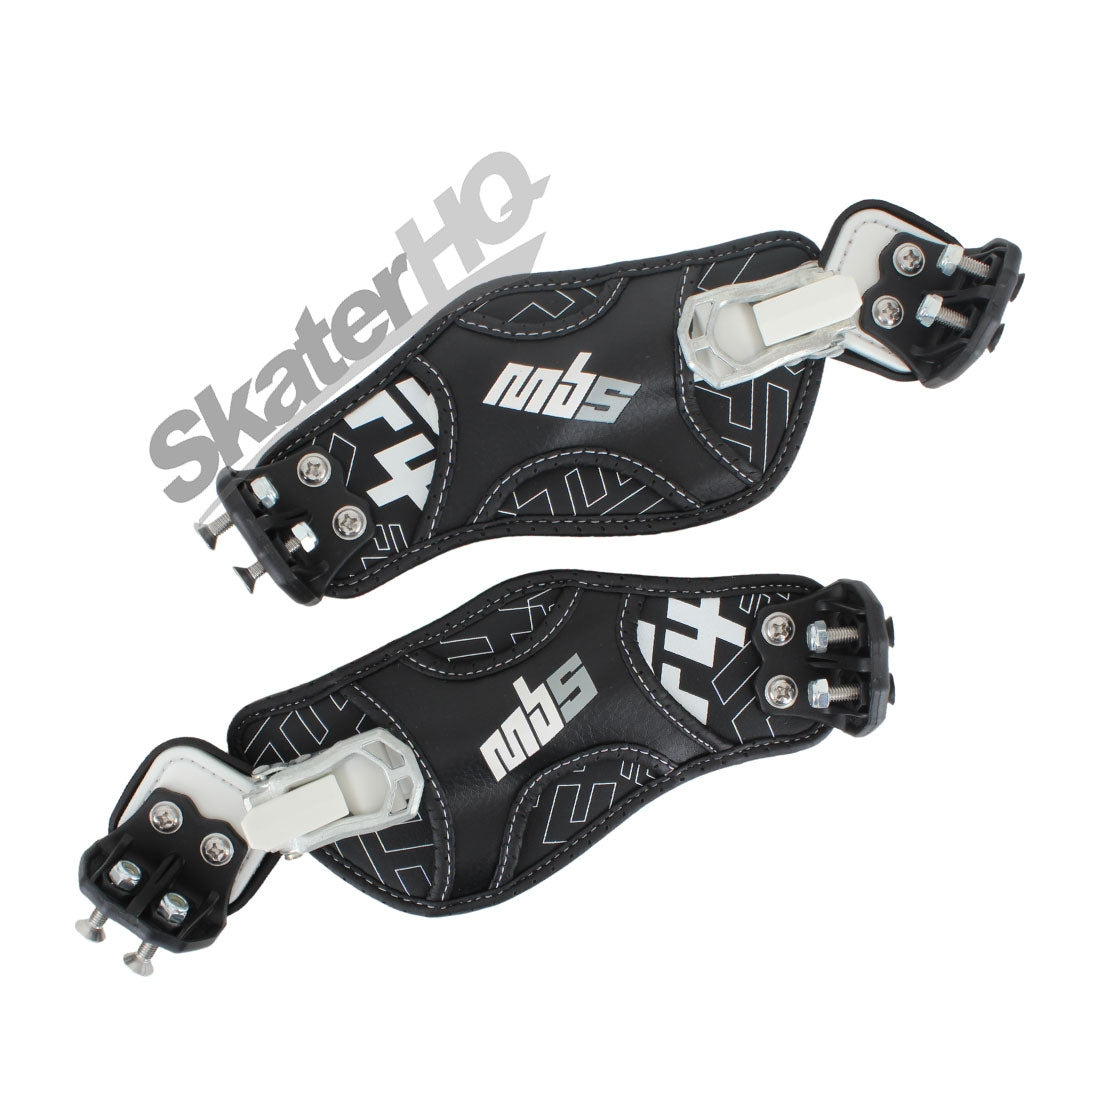 MBS F4 Binding Pair - Black Skateboard Accessories